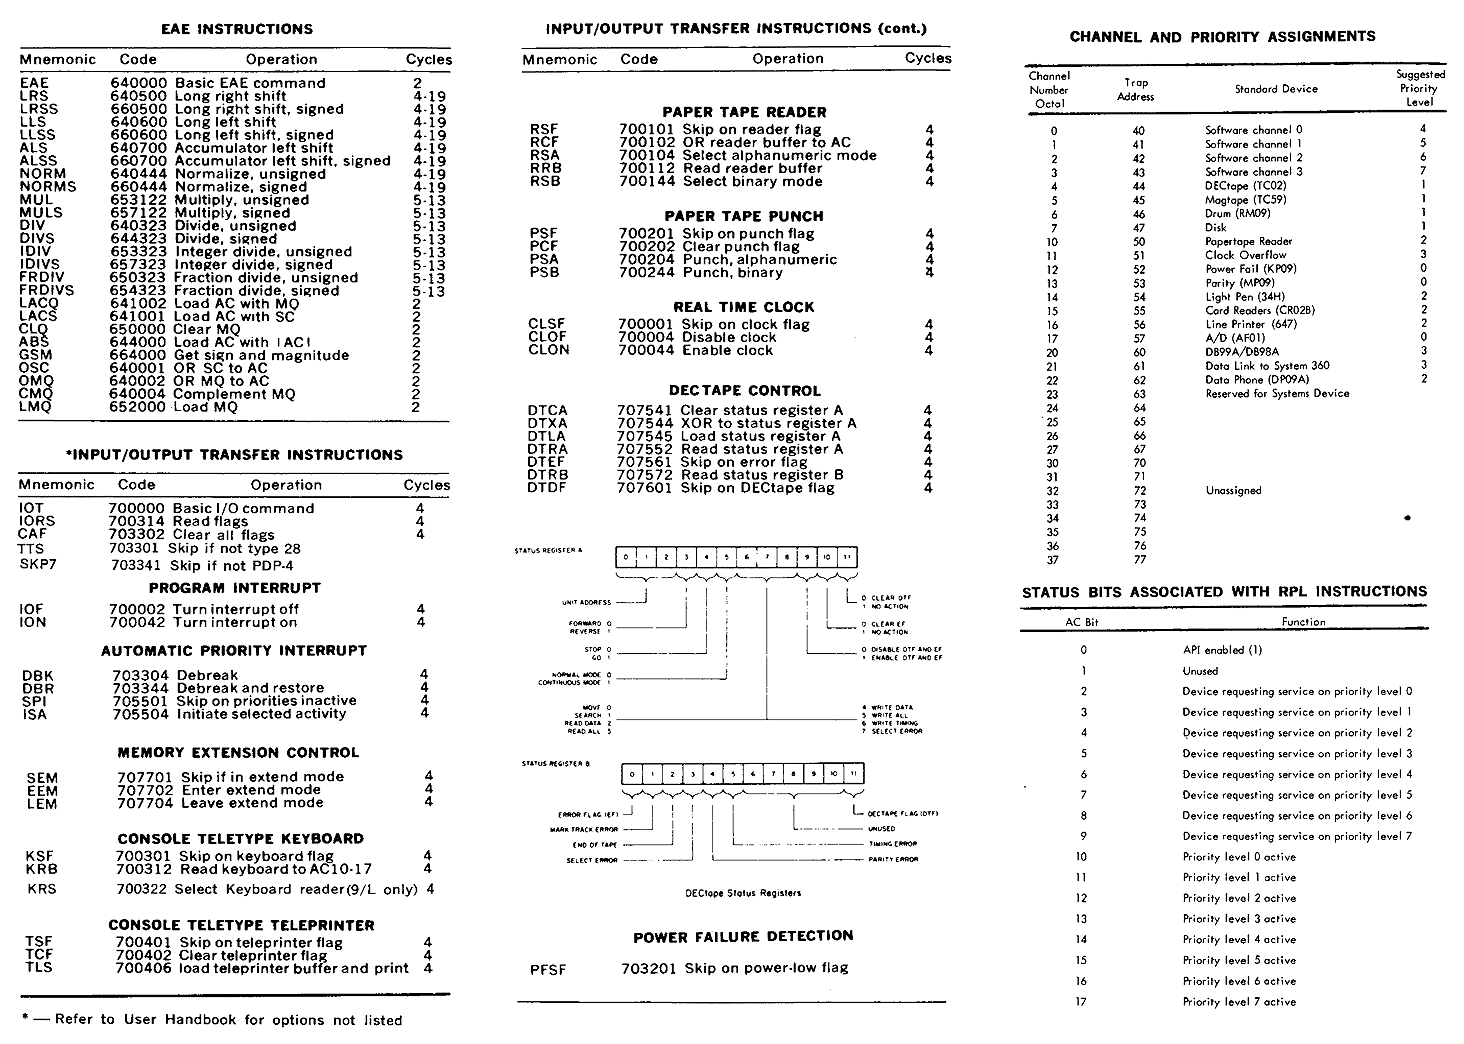 PDP-9